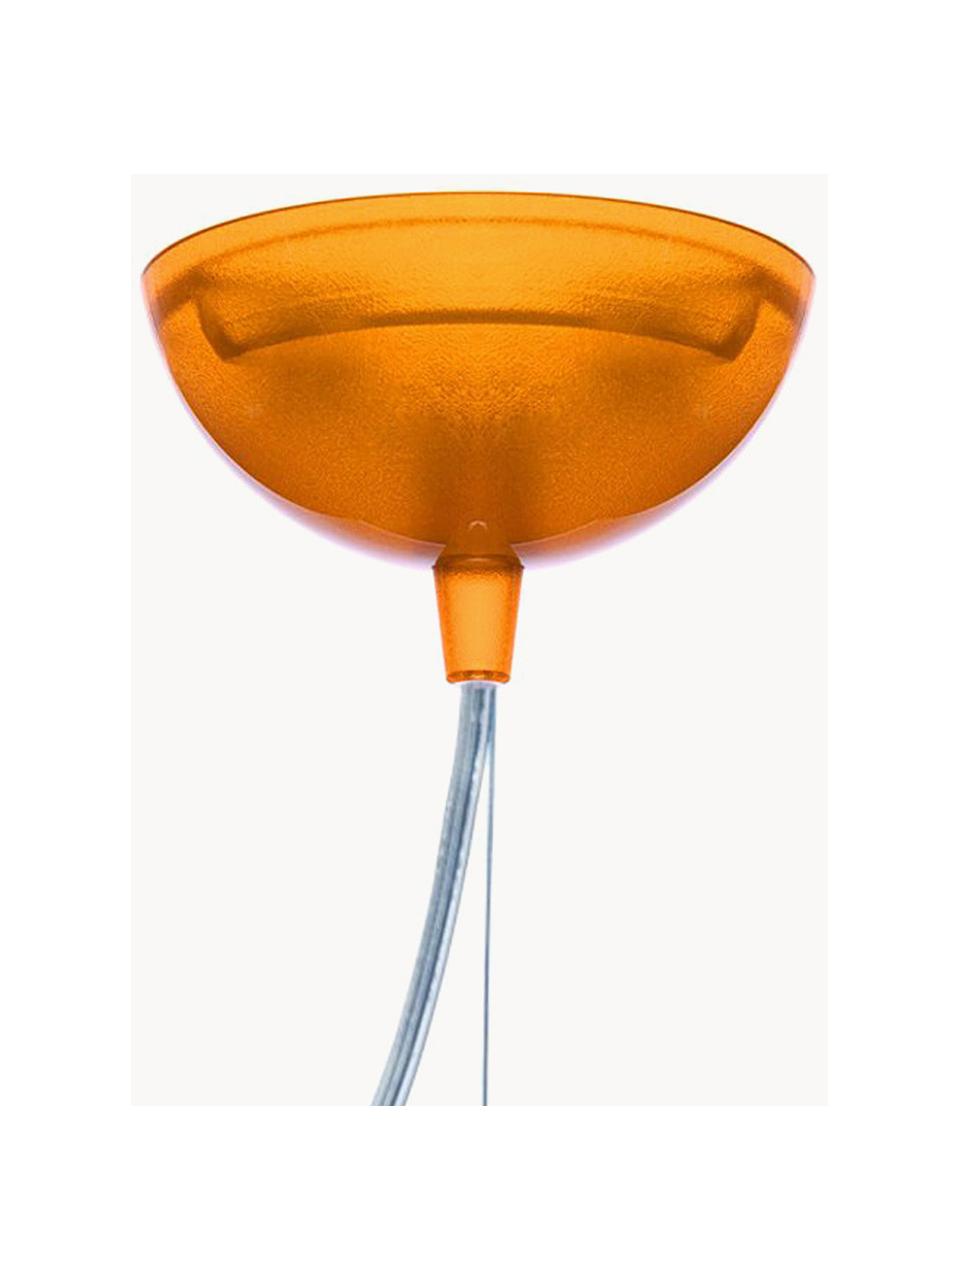 Lampa wisząca FL/Y, Pomarańczowy, transparentny, Ø 38 x W 28 cm